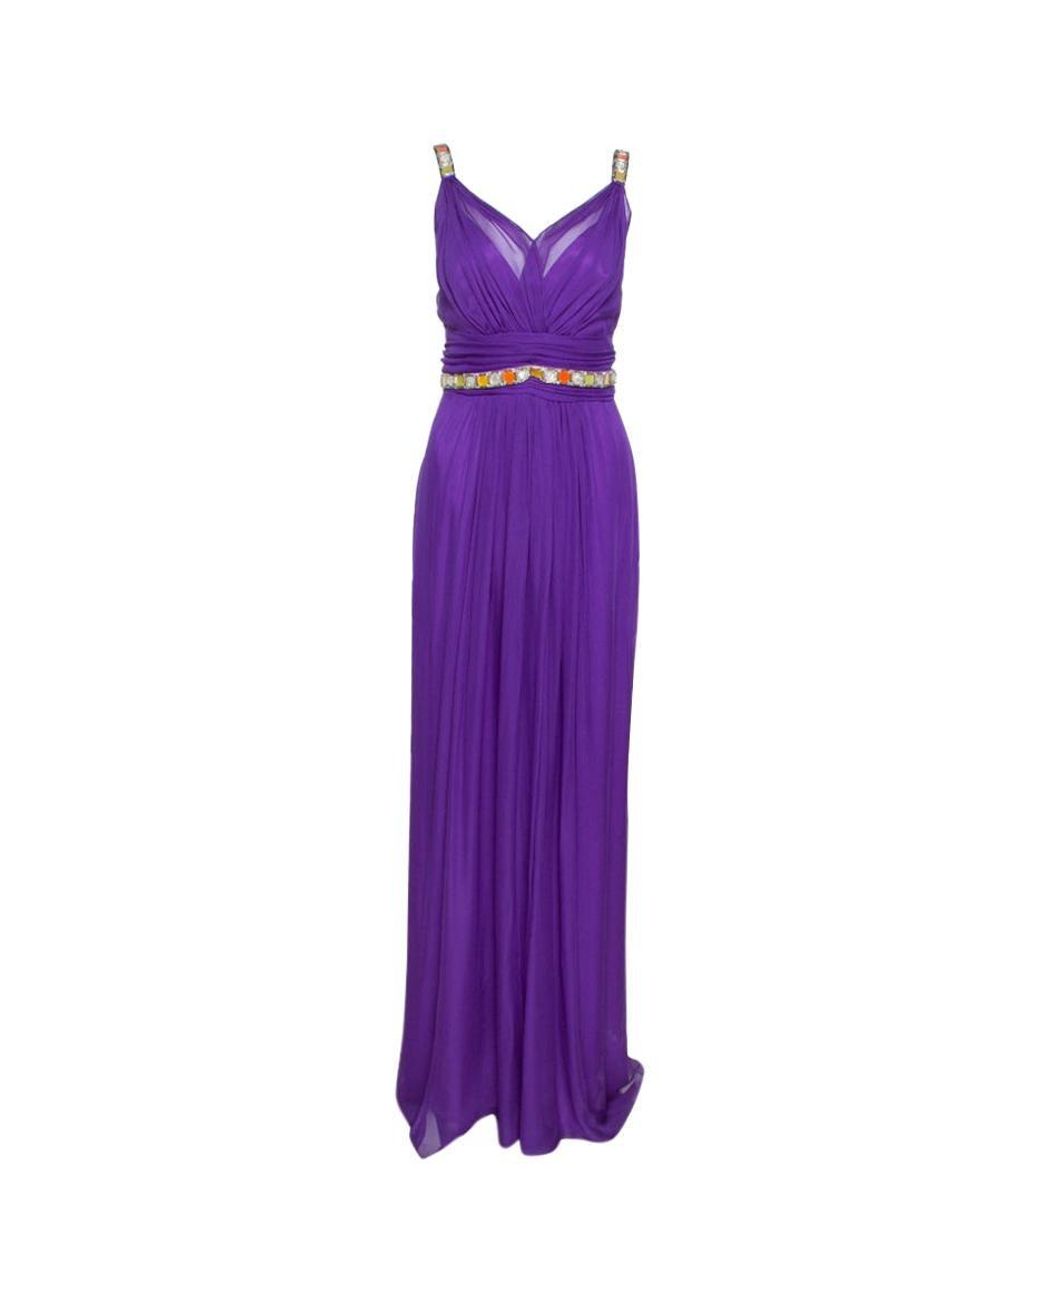 Dolce & Gabbana Silk Chiffon Embellished Maxi Dress L in Purple - Lyst